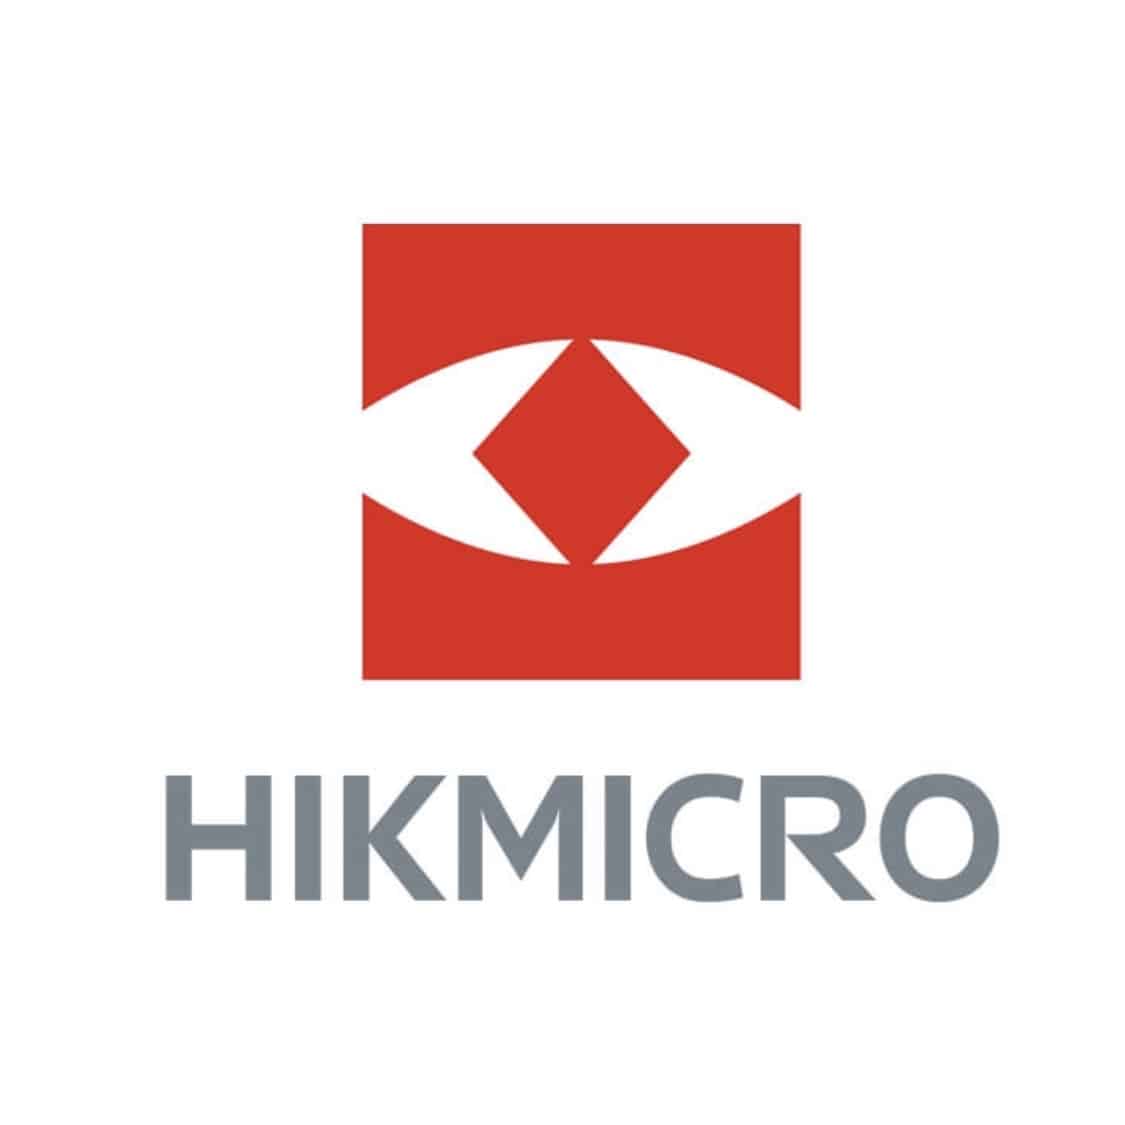 Markenseite der Firma: Hikmicro